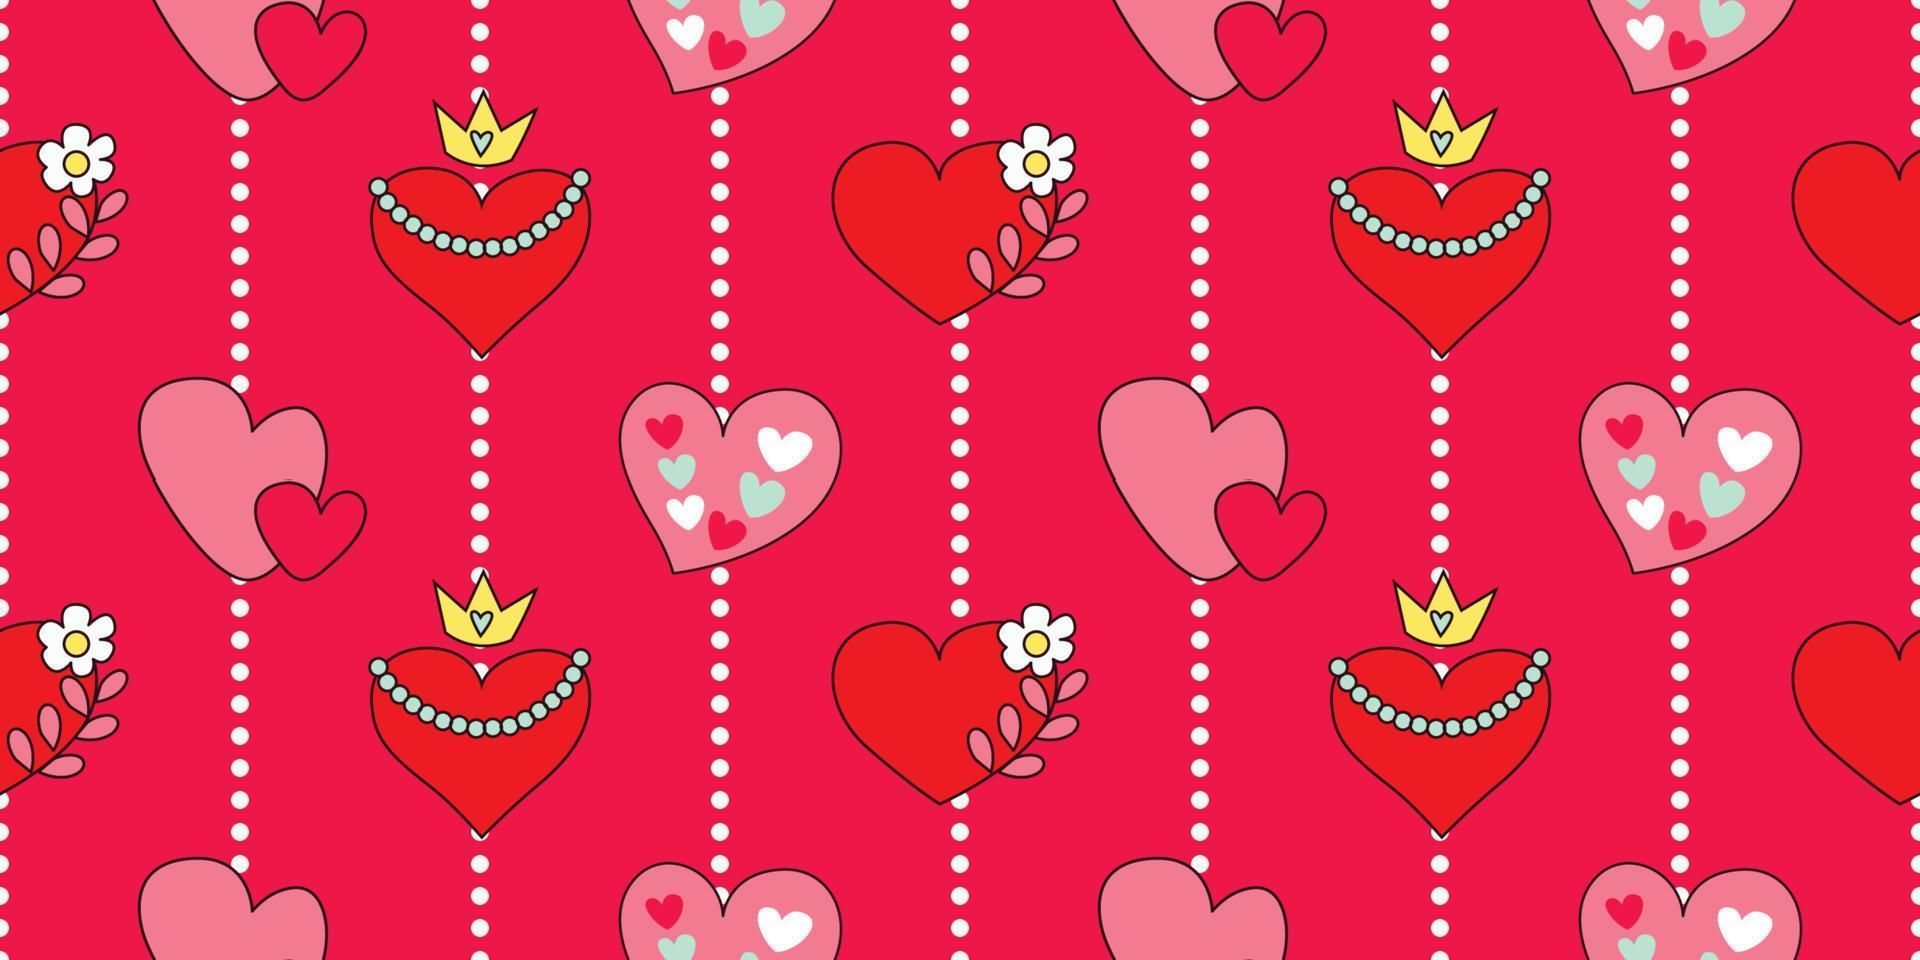 https://static.vecteezy.com/ti/vettori-gratis/p1/20432346-bellissimo-modello-corona-cuore-scarabocchio-regina-di-cuore-cartone-animato-incoronato-e-regina-paio-di-cuori-rosso-e-rosa-modello-per-amore-e-san-valentino-giorno-il-senza-soluzione-di-continuita-carino-modello-design-vettoriale.jpg